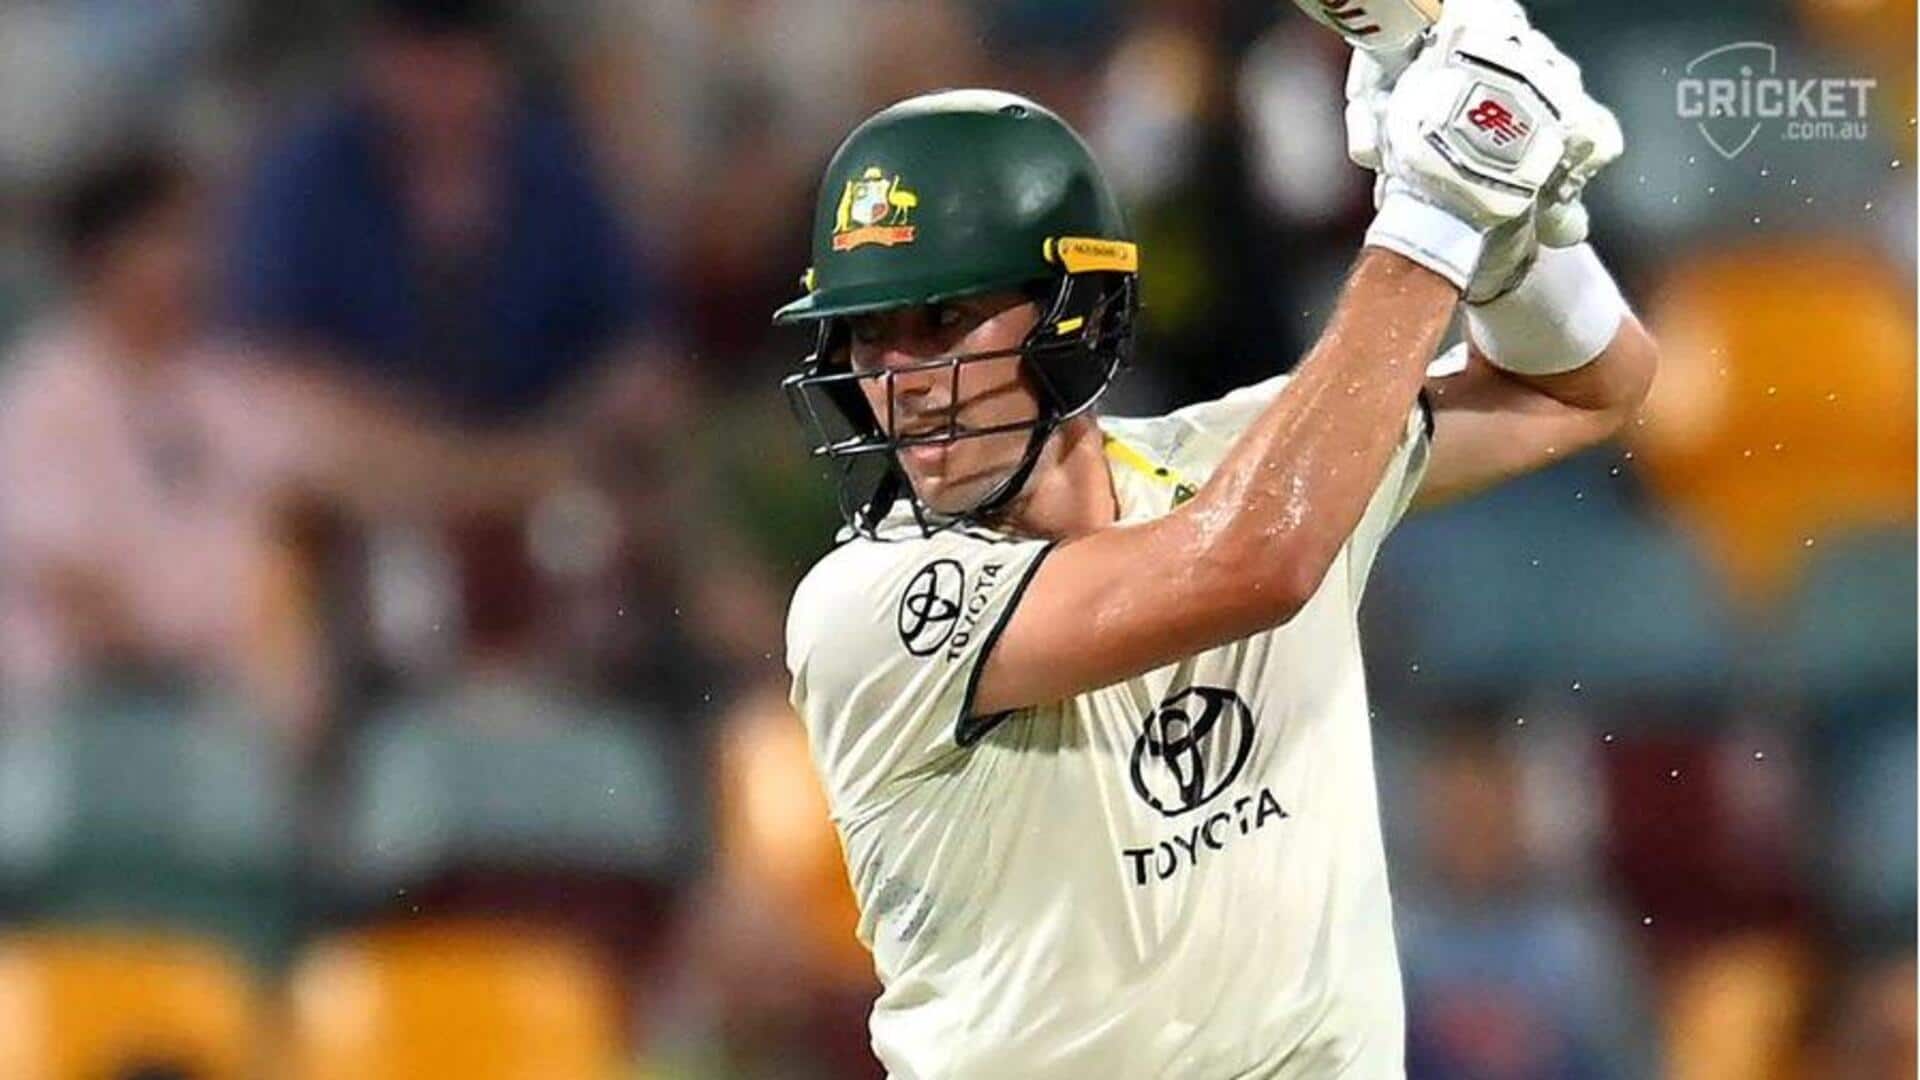 ऑस्ट्रेलिया बनाम वेस्टइंडीज: पैट कमिंस ने खेली अपने टेस्ट करियर की सर्वश्रेष्ठ पारी, जानिए उनके आंकड़े